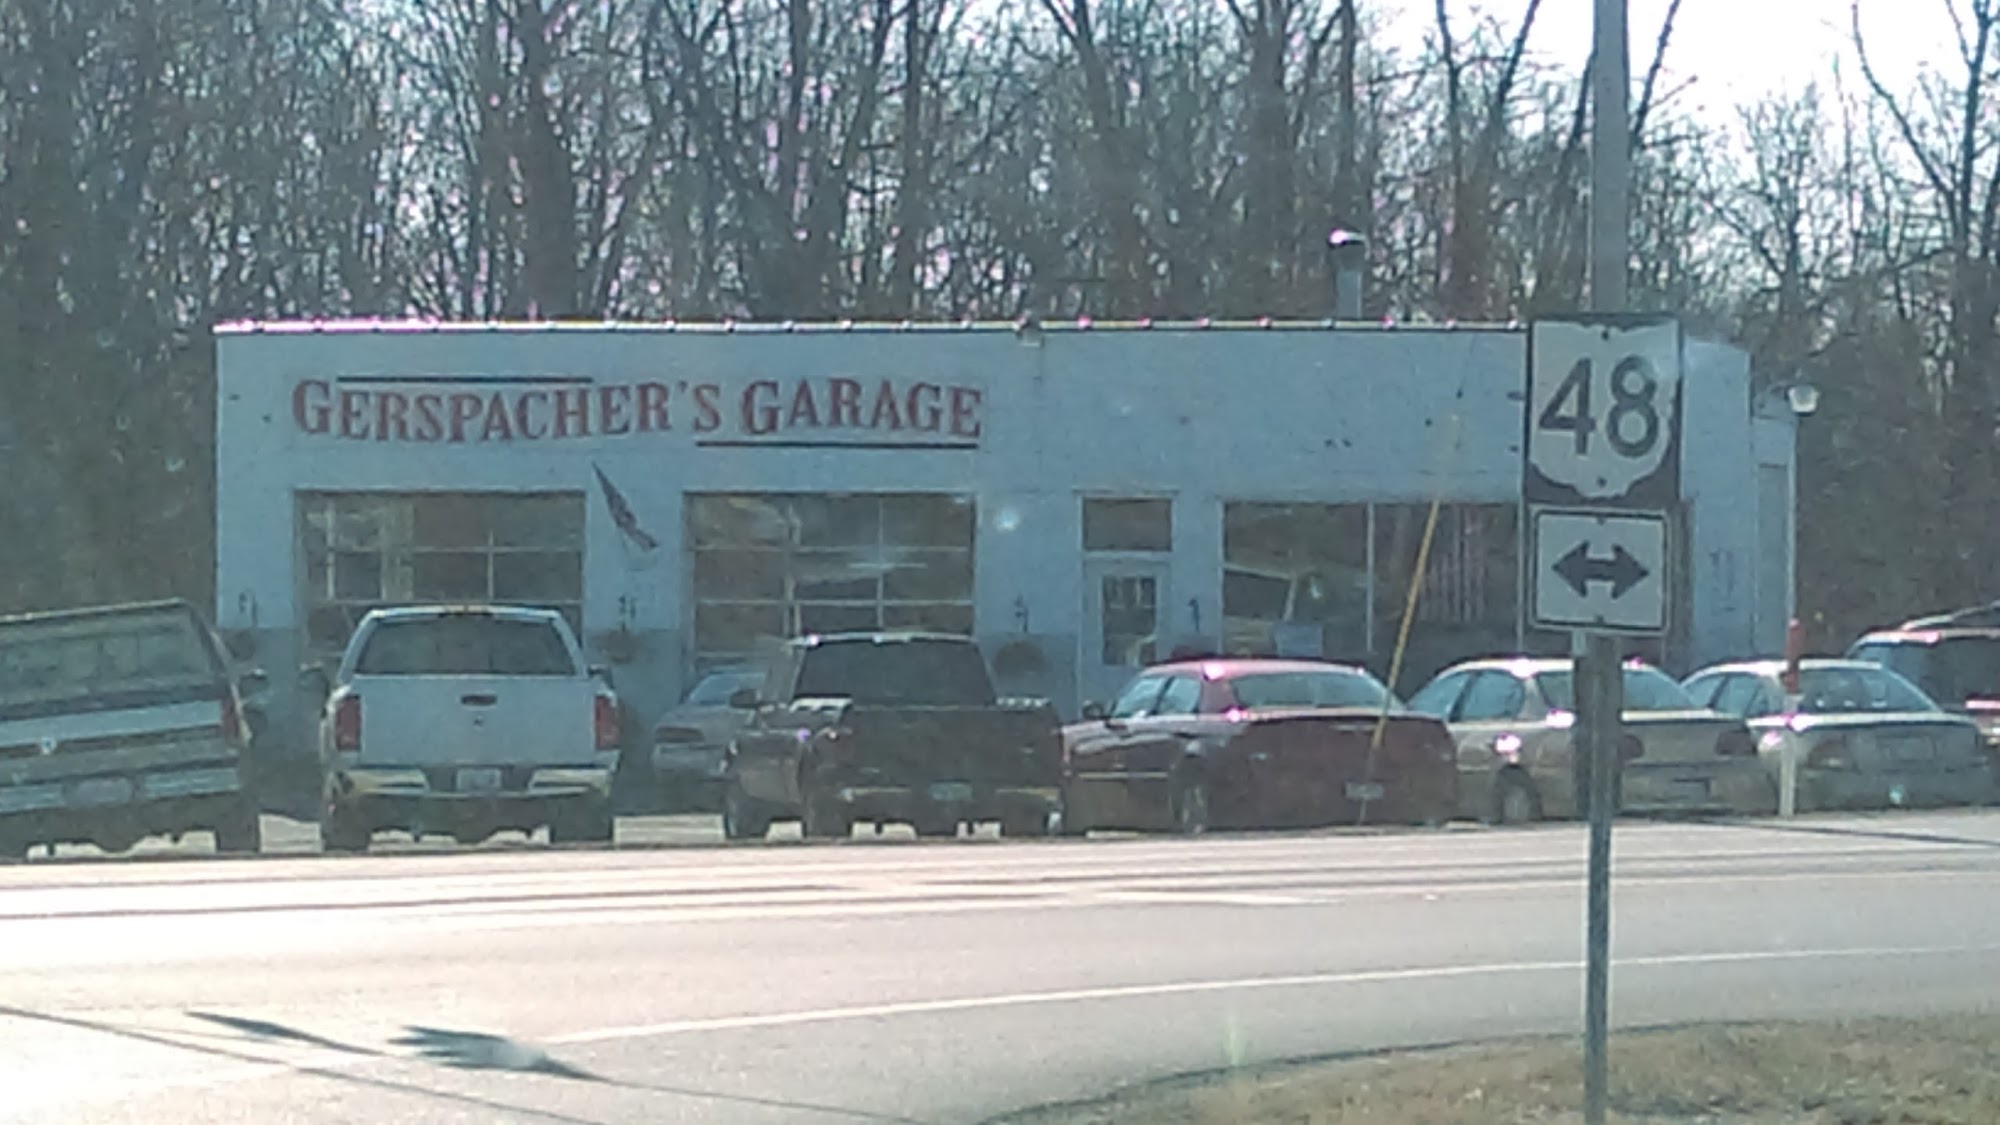 Gerspacher's Garage